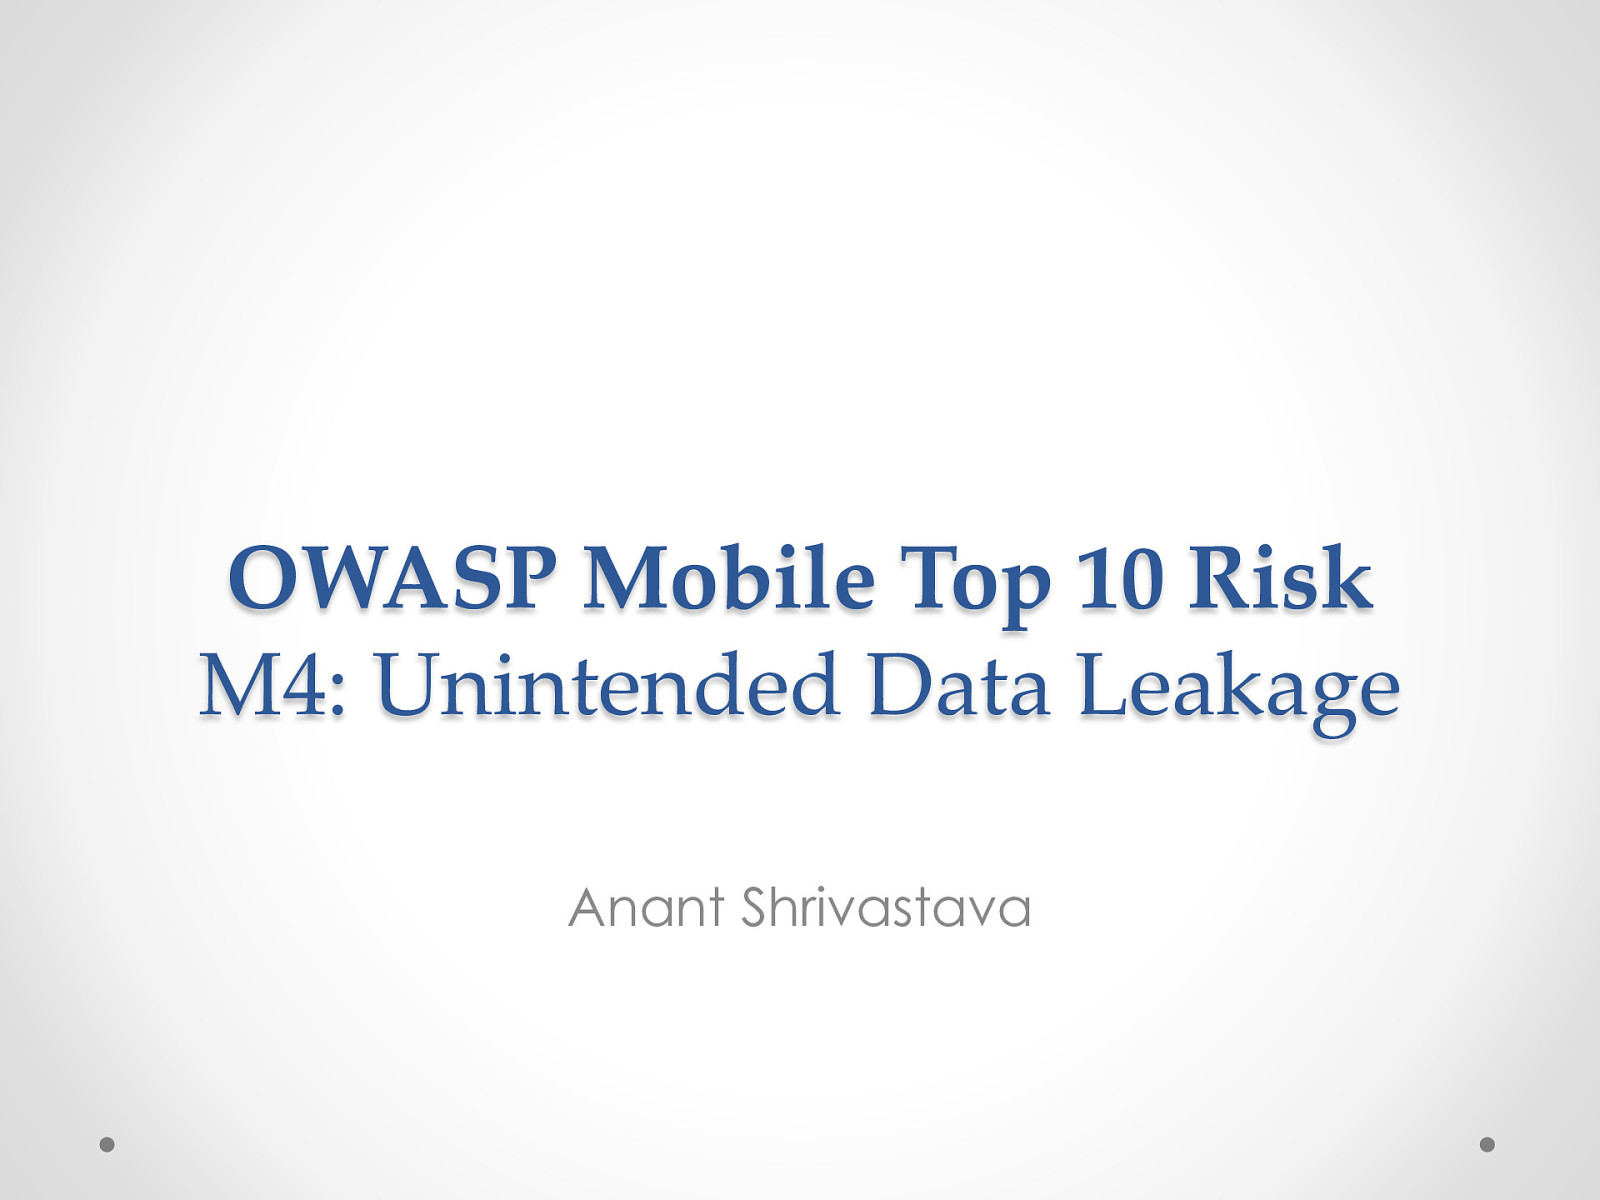 Owasp Mobile Risk Series : M4 : Unintended Data Leakage